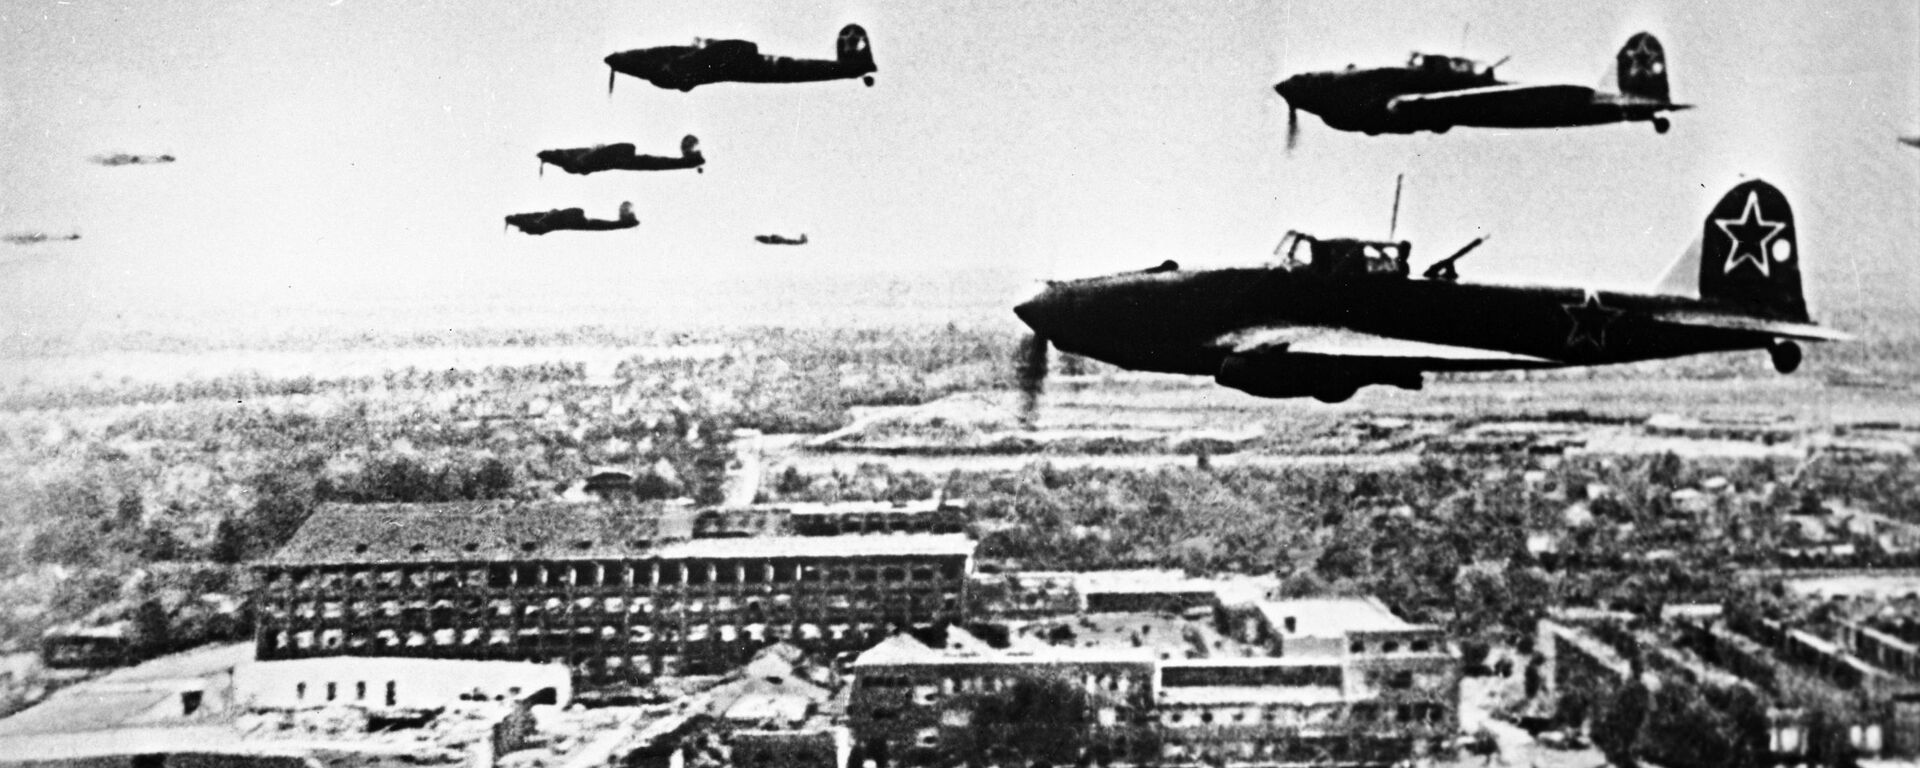 الطائرات السوفيتية إيل - 2 في سماء برلين خلال الحرب الوطنية العظمى ( الحرب العالمية الثانية)، عام 1945 - سبوتنيك عربي, 1920, 14.05.2020